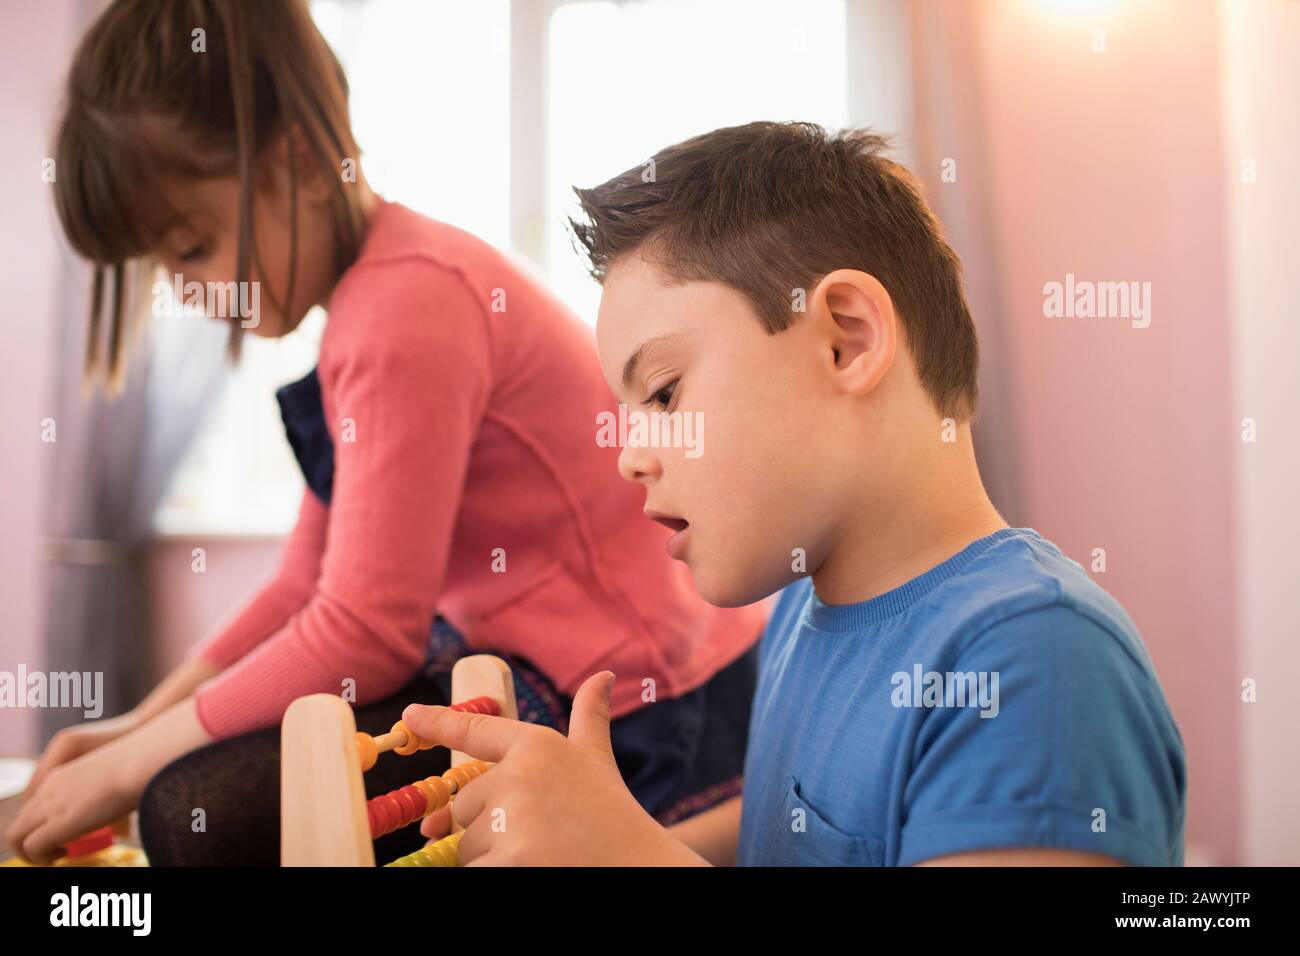 Neugieriger Junge mit Down-Syndrom, der mit Spielzeug spielt Stockfoto